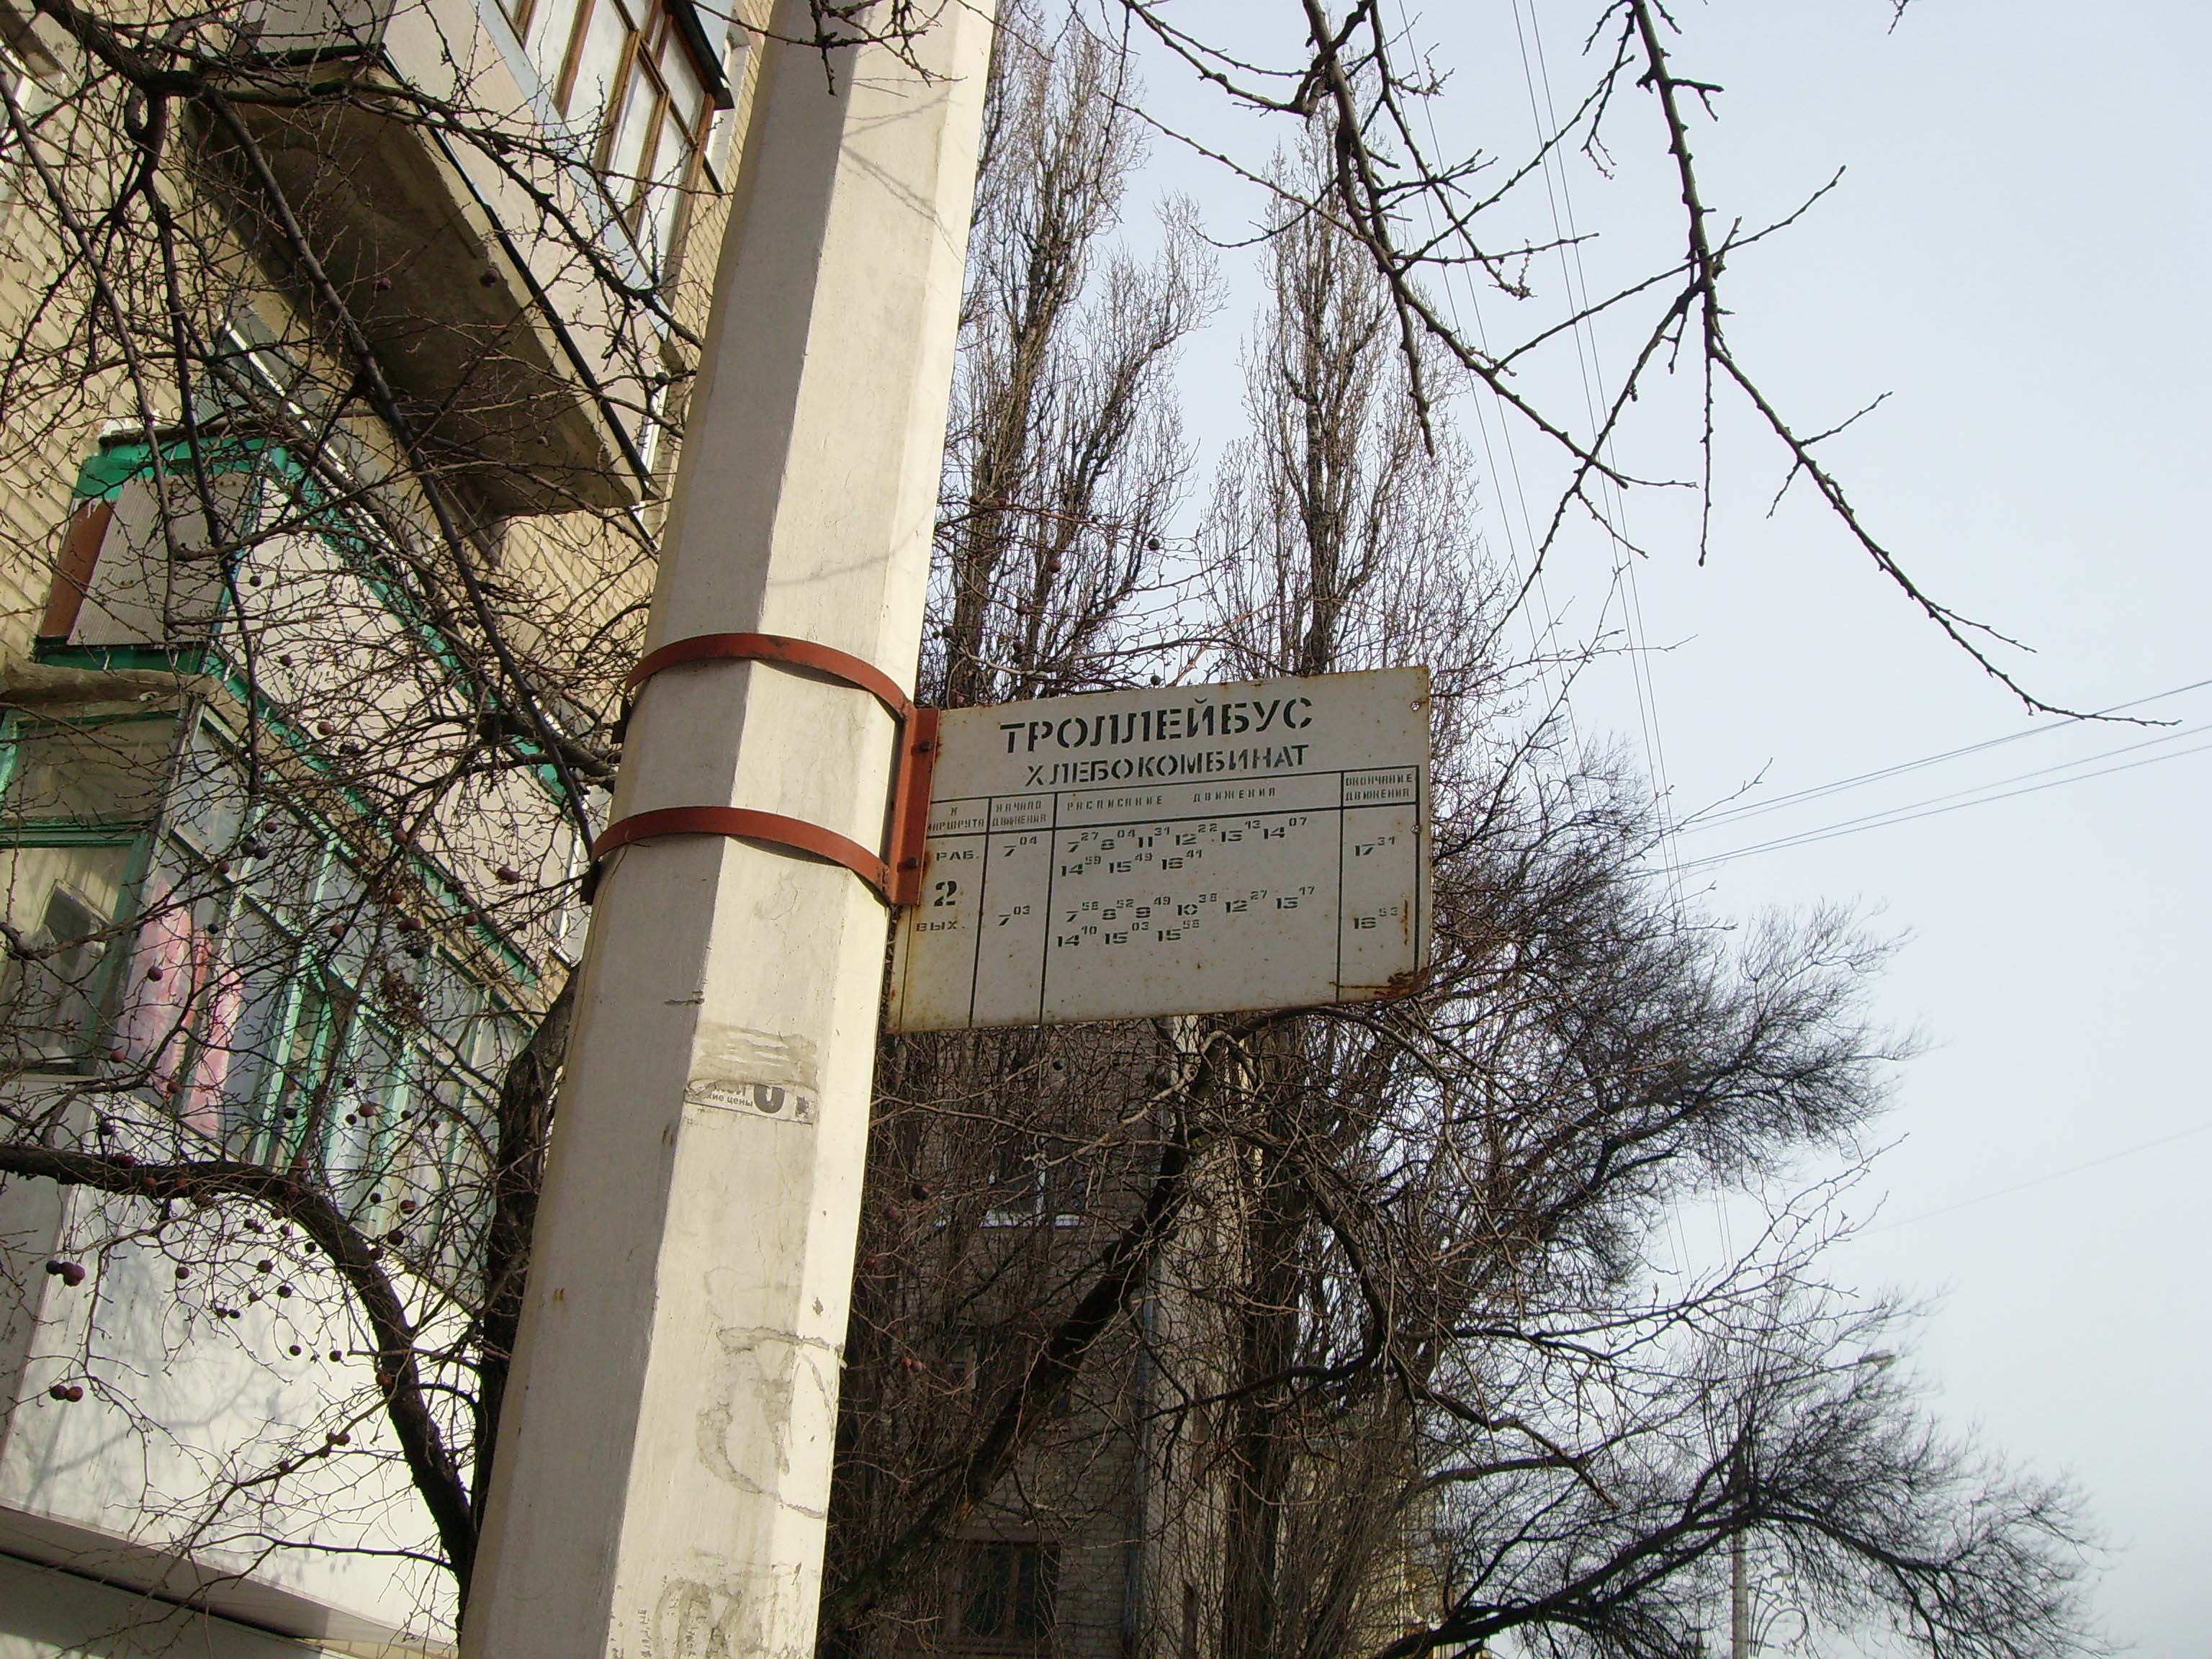 Маршрутная табличка на остановке "Хлебокомбинат" периода начала 2000-х годов.